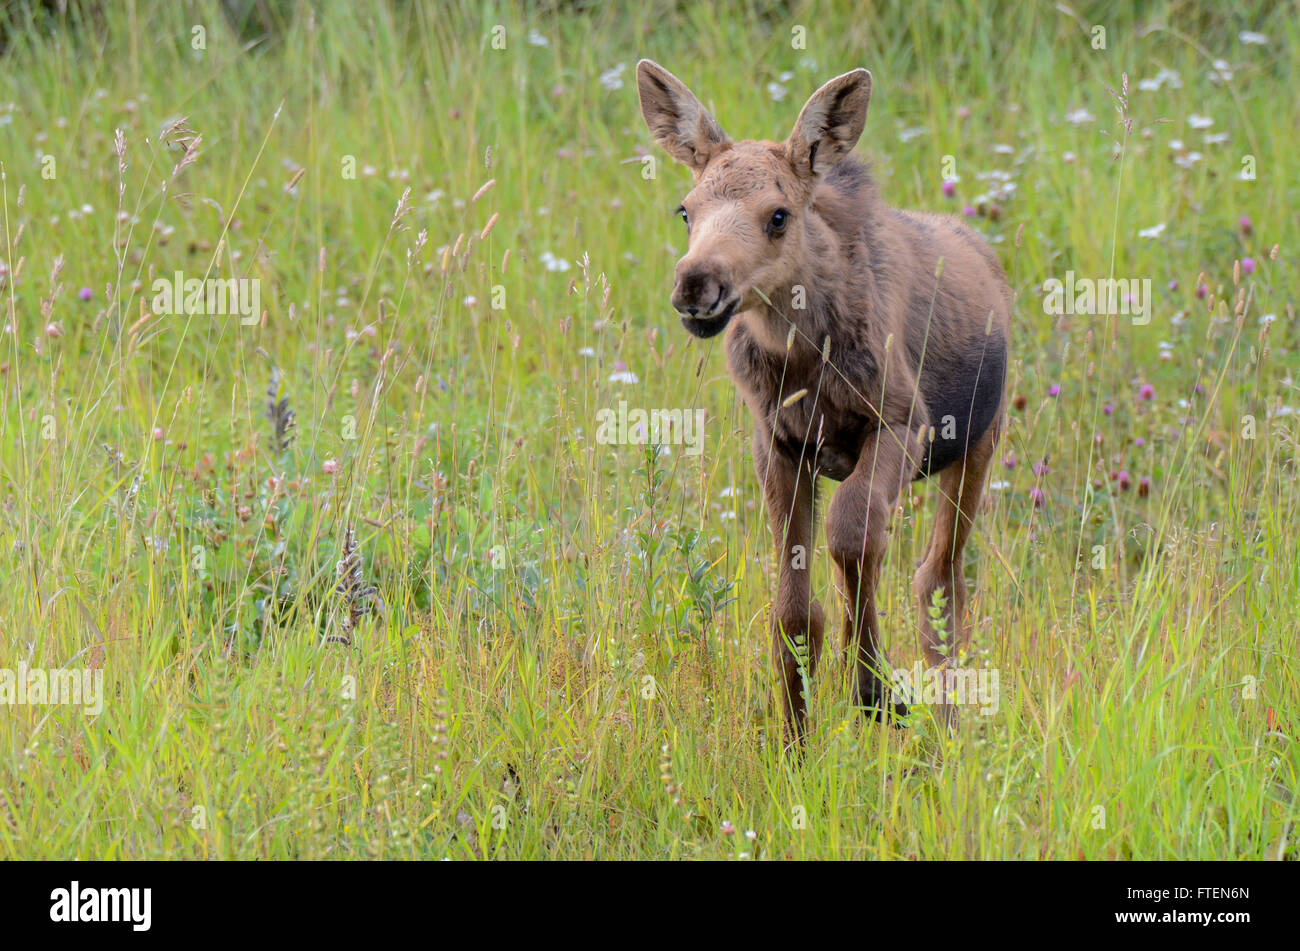 Moose calf walking through grass Stock Photo